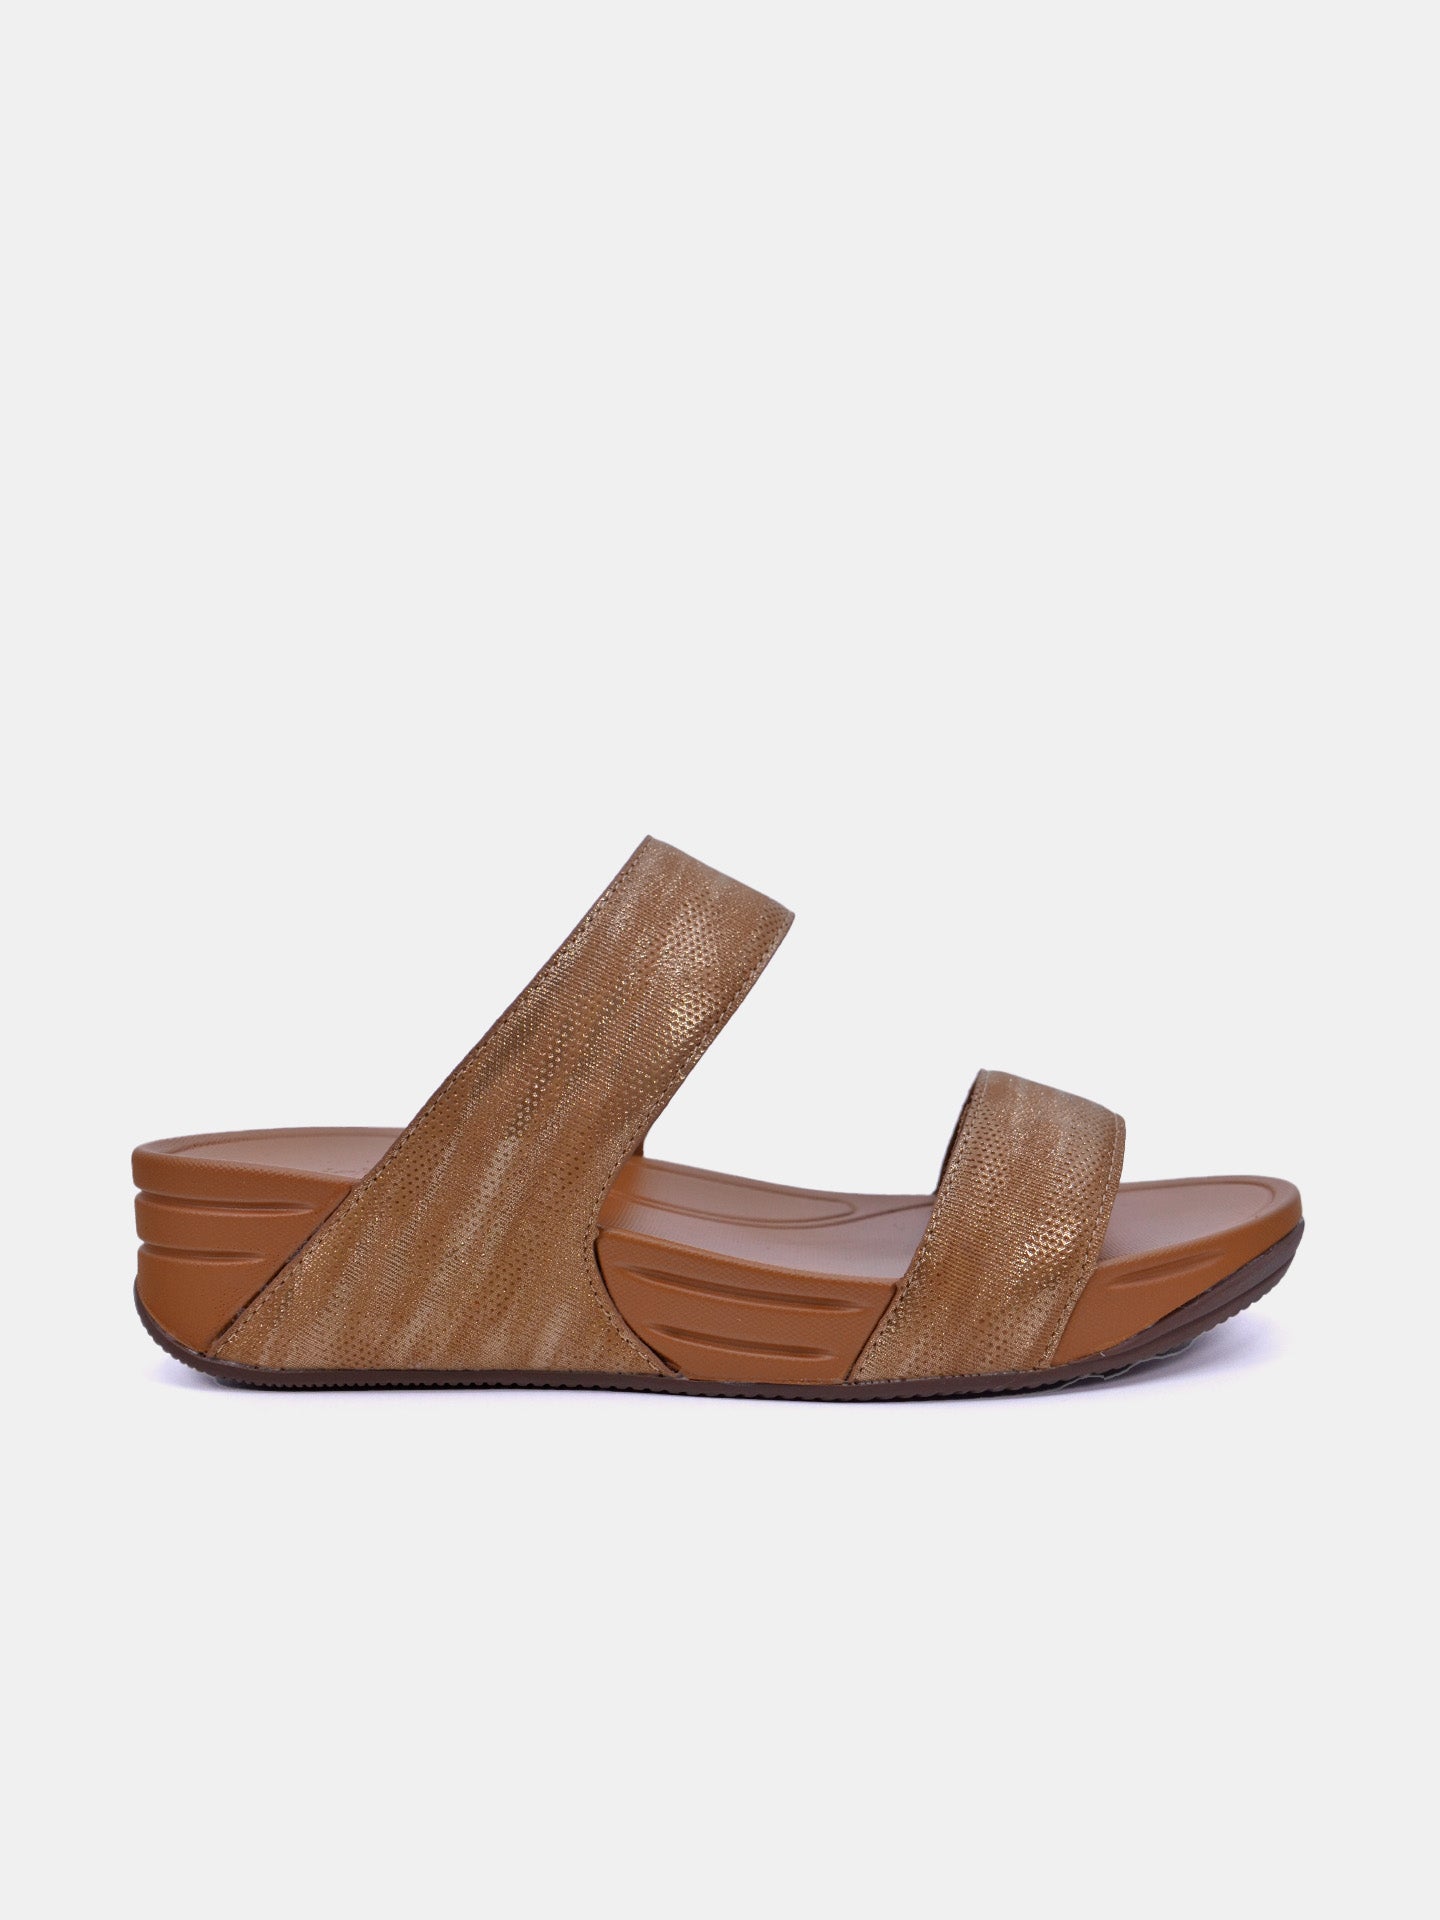 Michelle Morgan 214RJ911 Women's Sandals #color_Tan